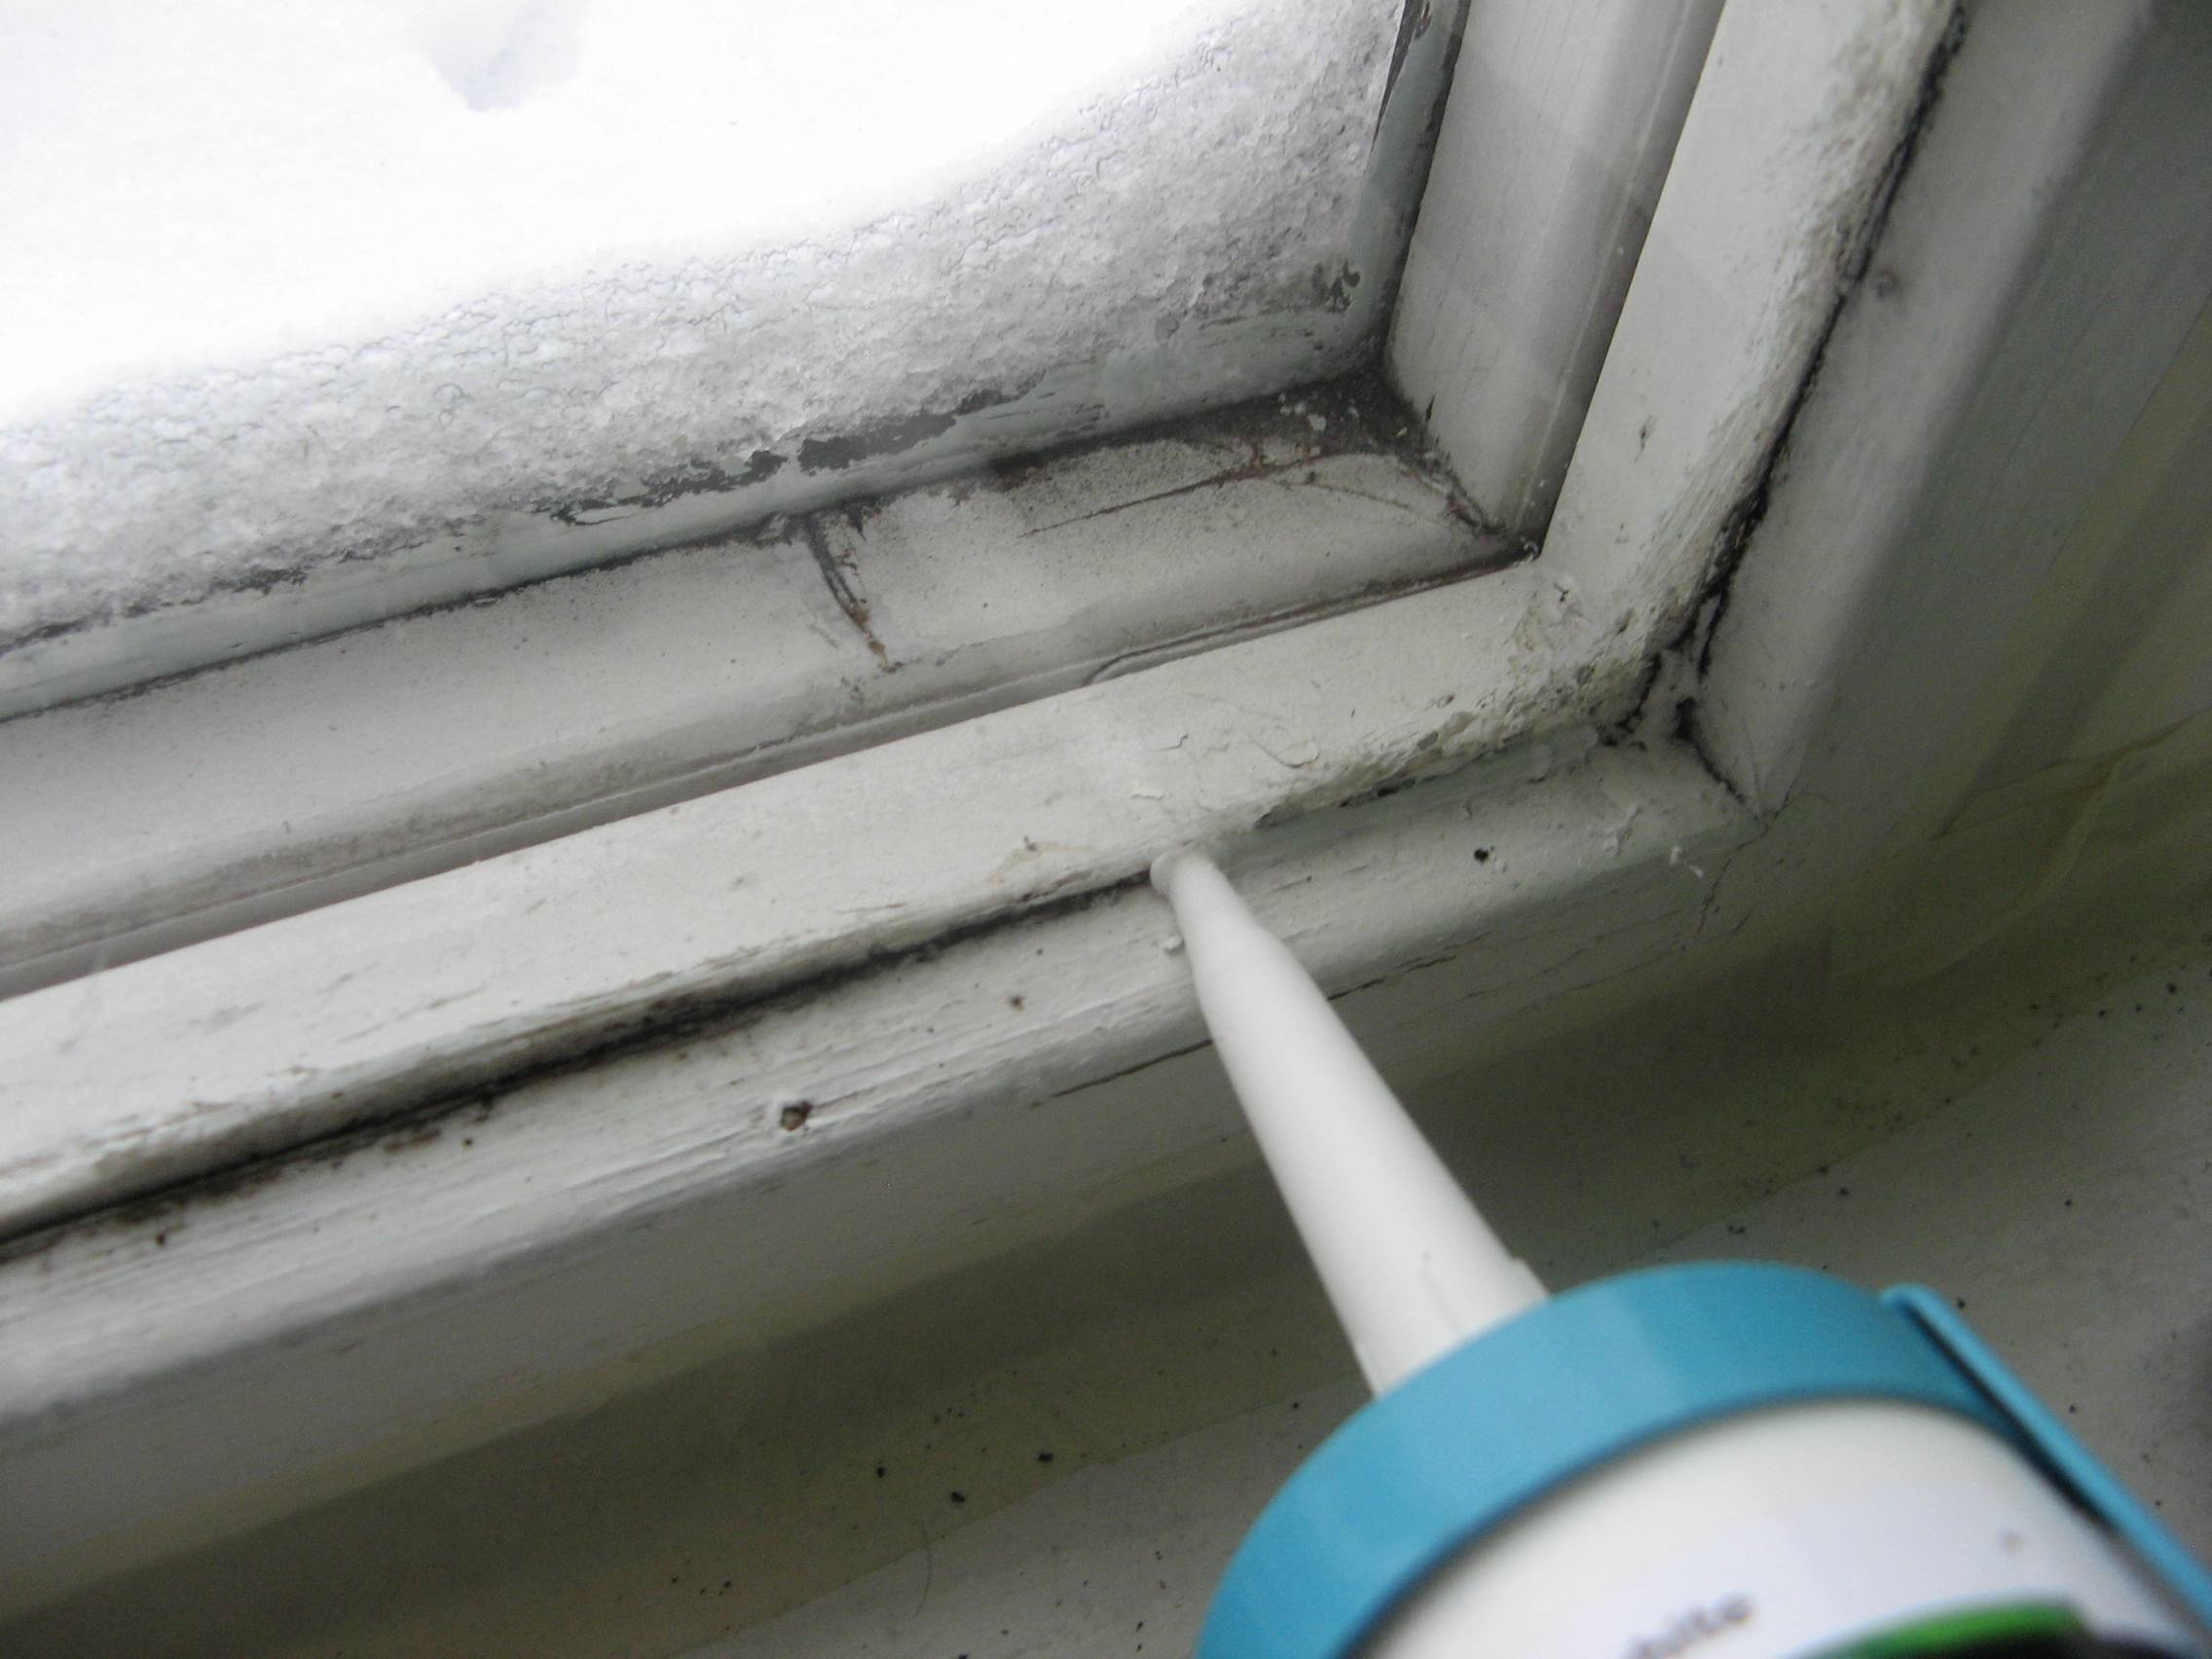 10 проверенных способов как утеплить окна на зиму своими руками